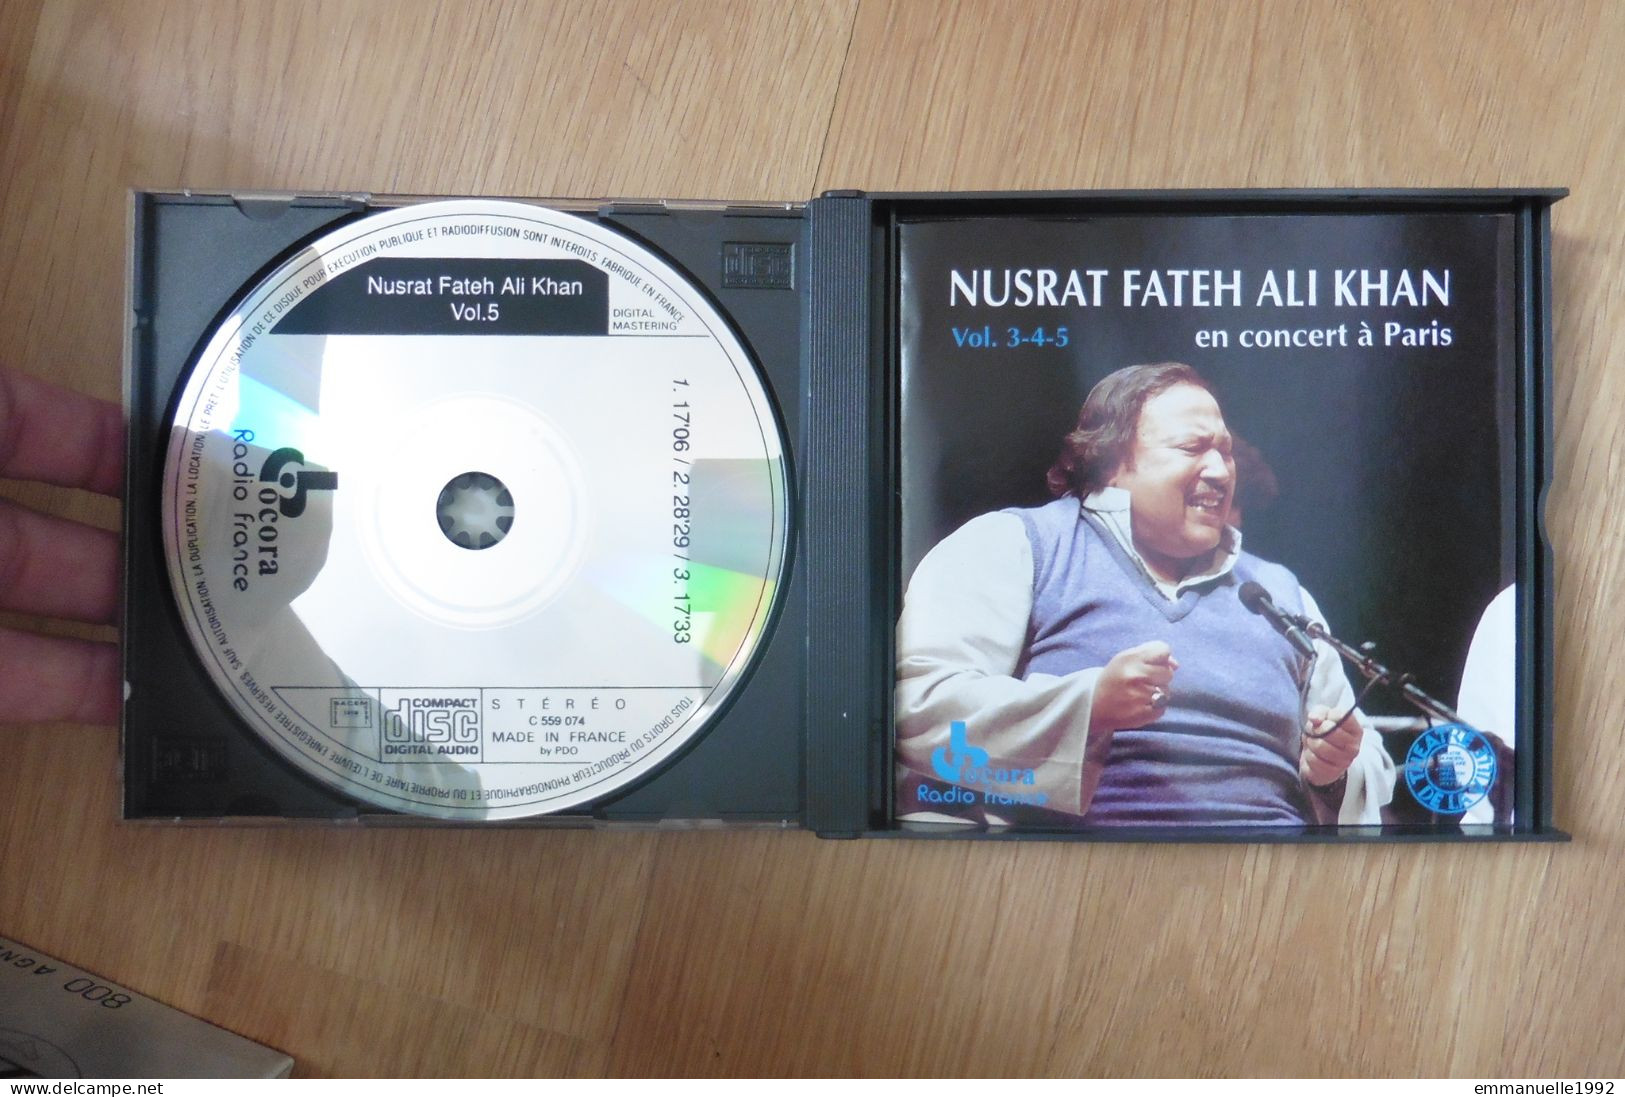 RARE ! Coffret 3 CD Nusrat Fateh Ali Khan En Concert à Paris Vol 3-4-5 Musicien Pakistanais - World Music